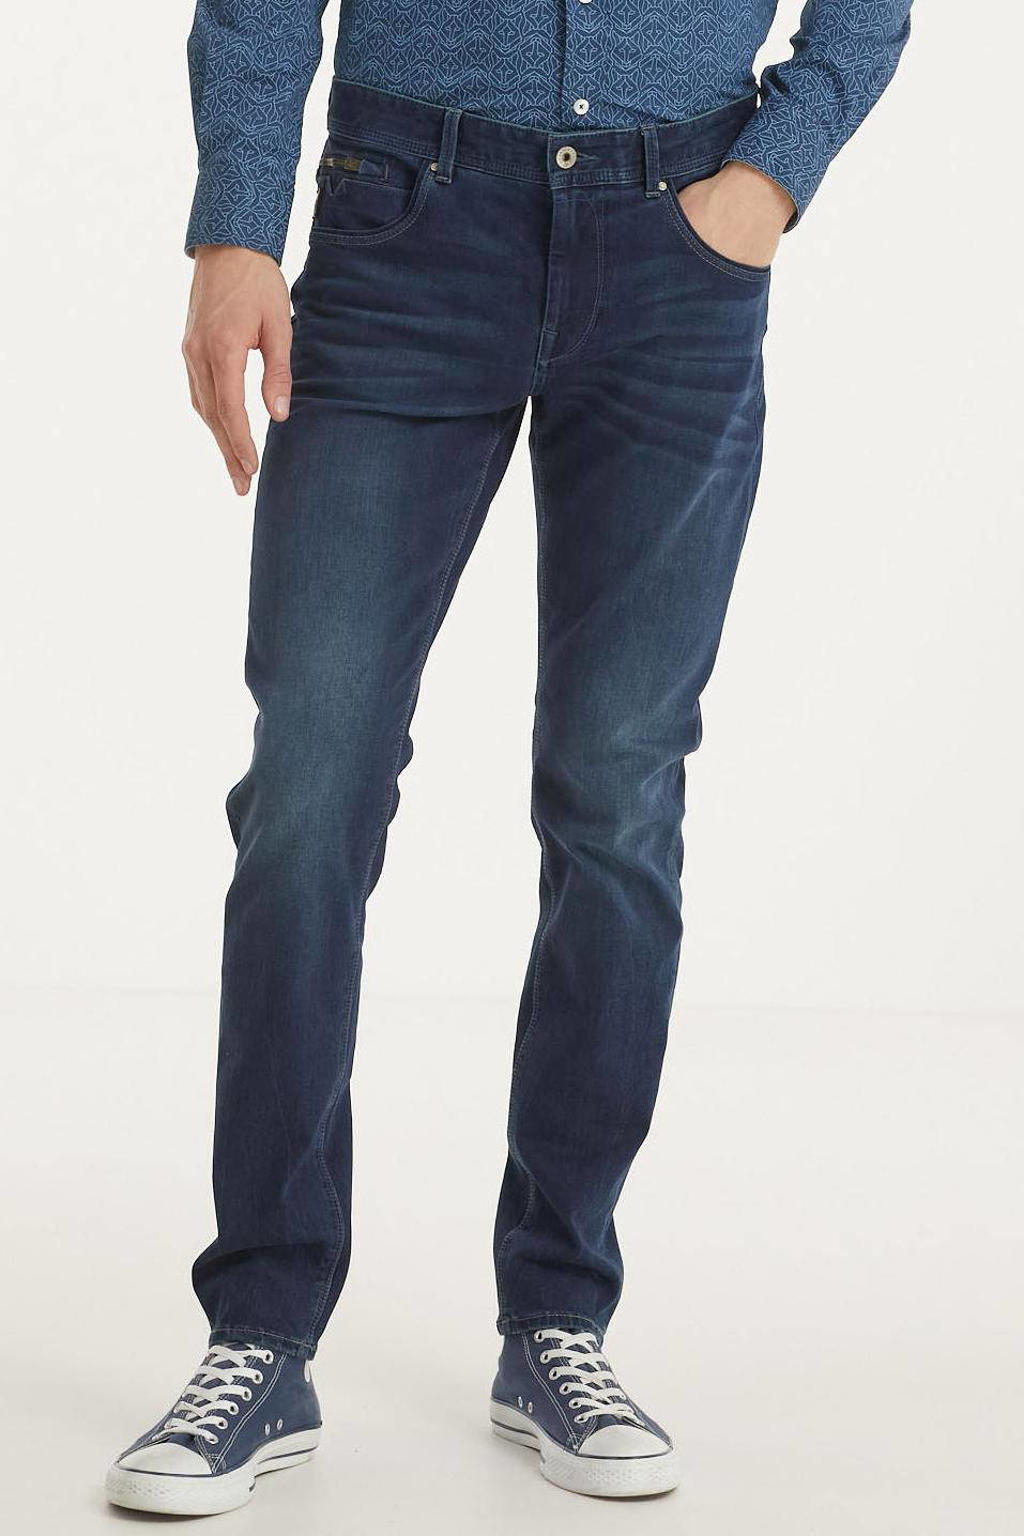 Vanguard slim fit jeans V850